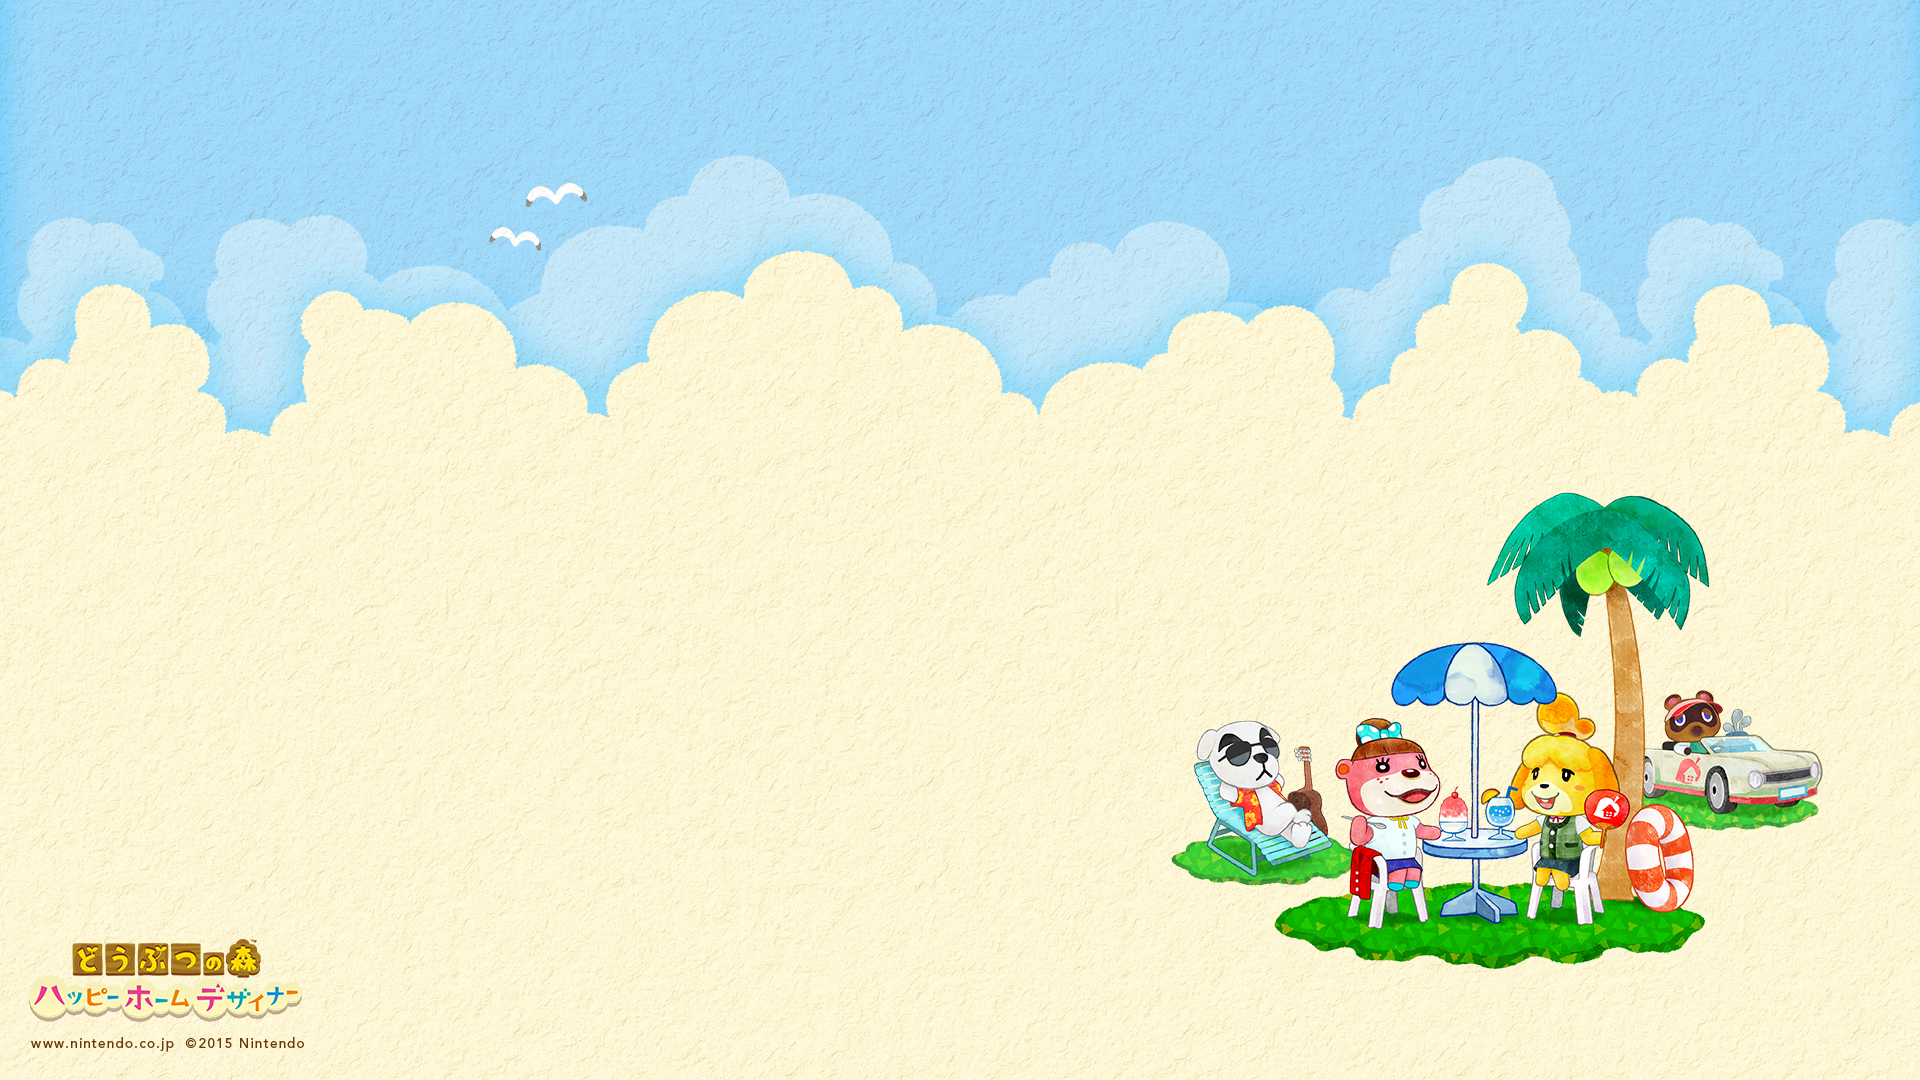 Summer Animal Crossing Happy Home Designer Wallpaper From Nintendo